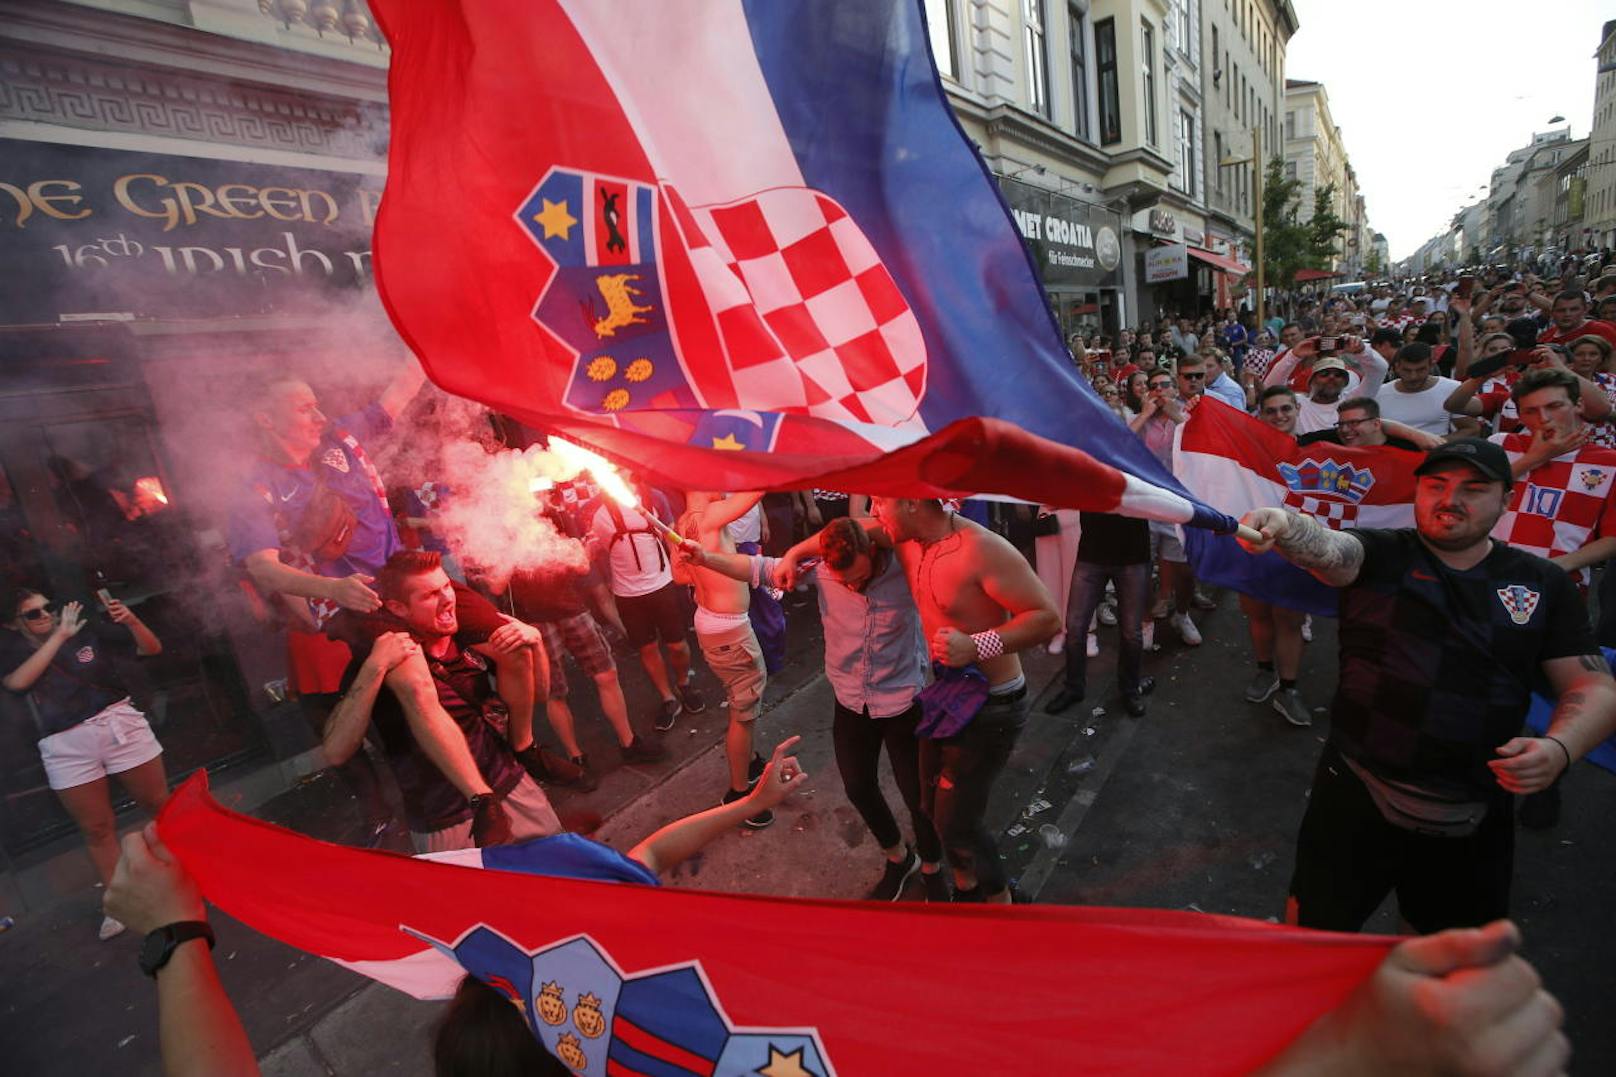 Wiener Polizei rüstet sich für Kroatien-Match